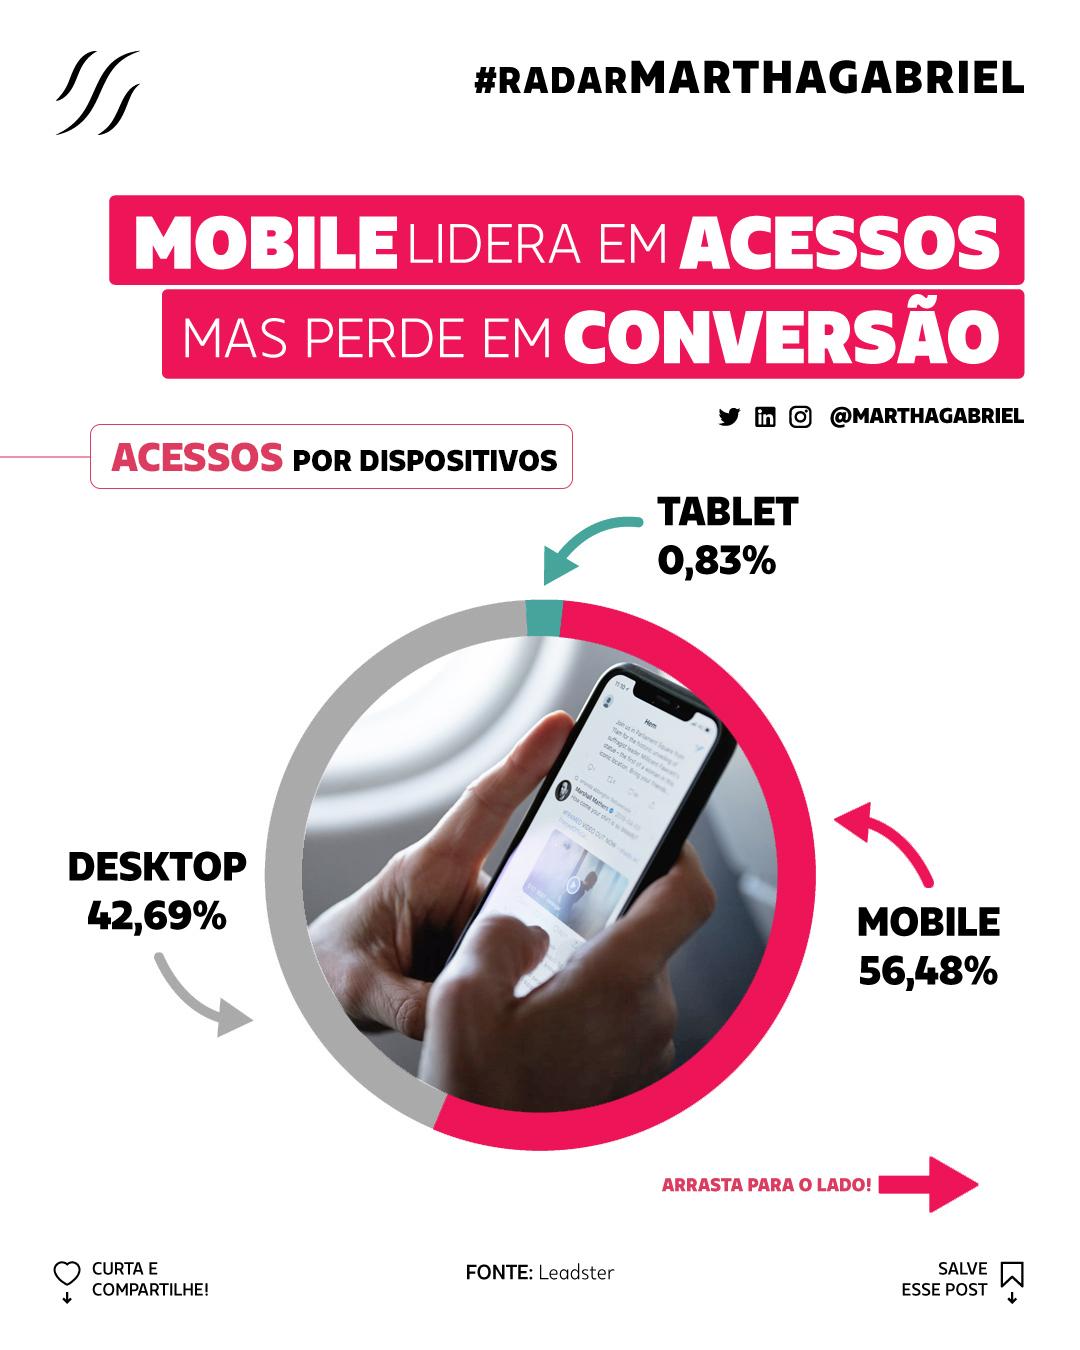 Mobile lidera em acessos mas perde em conversão